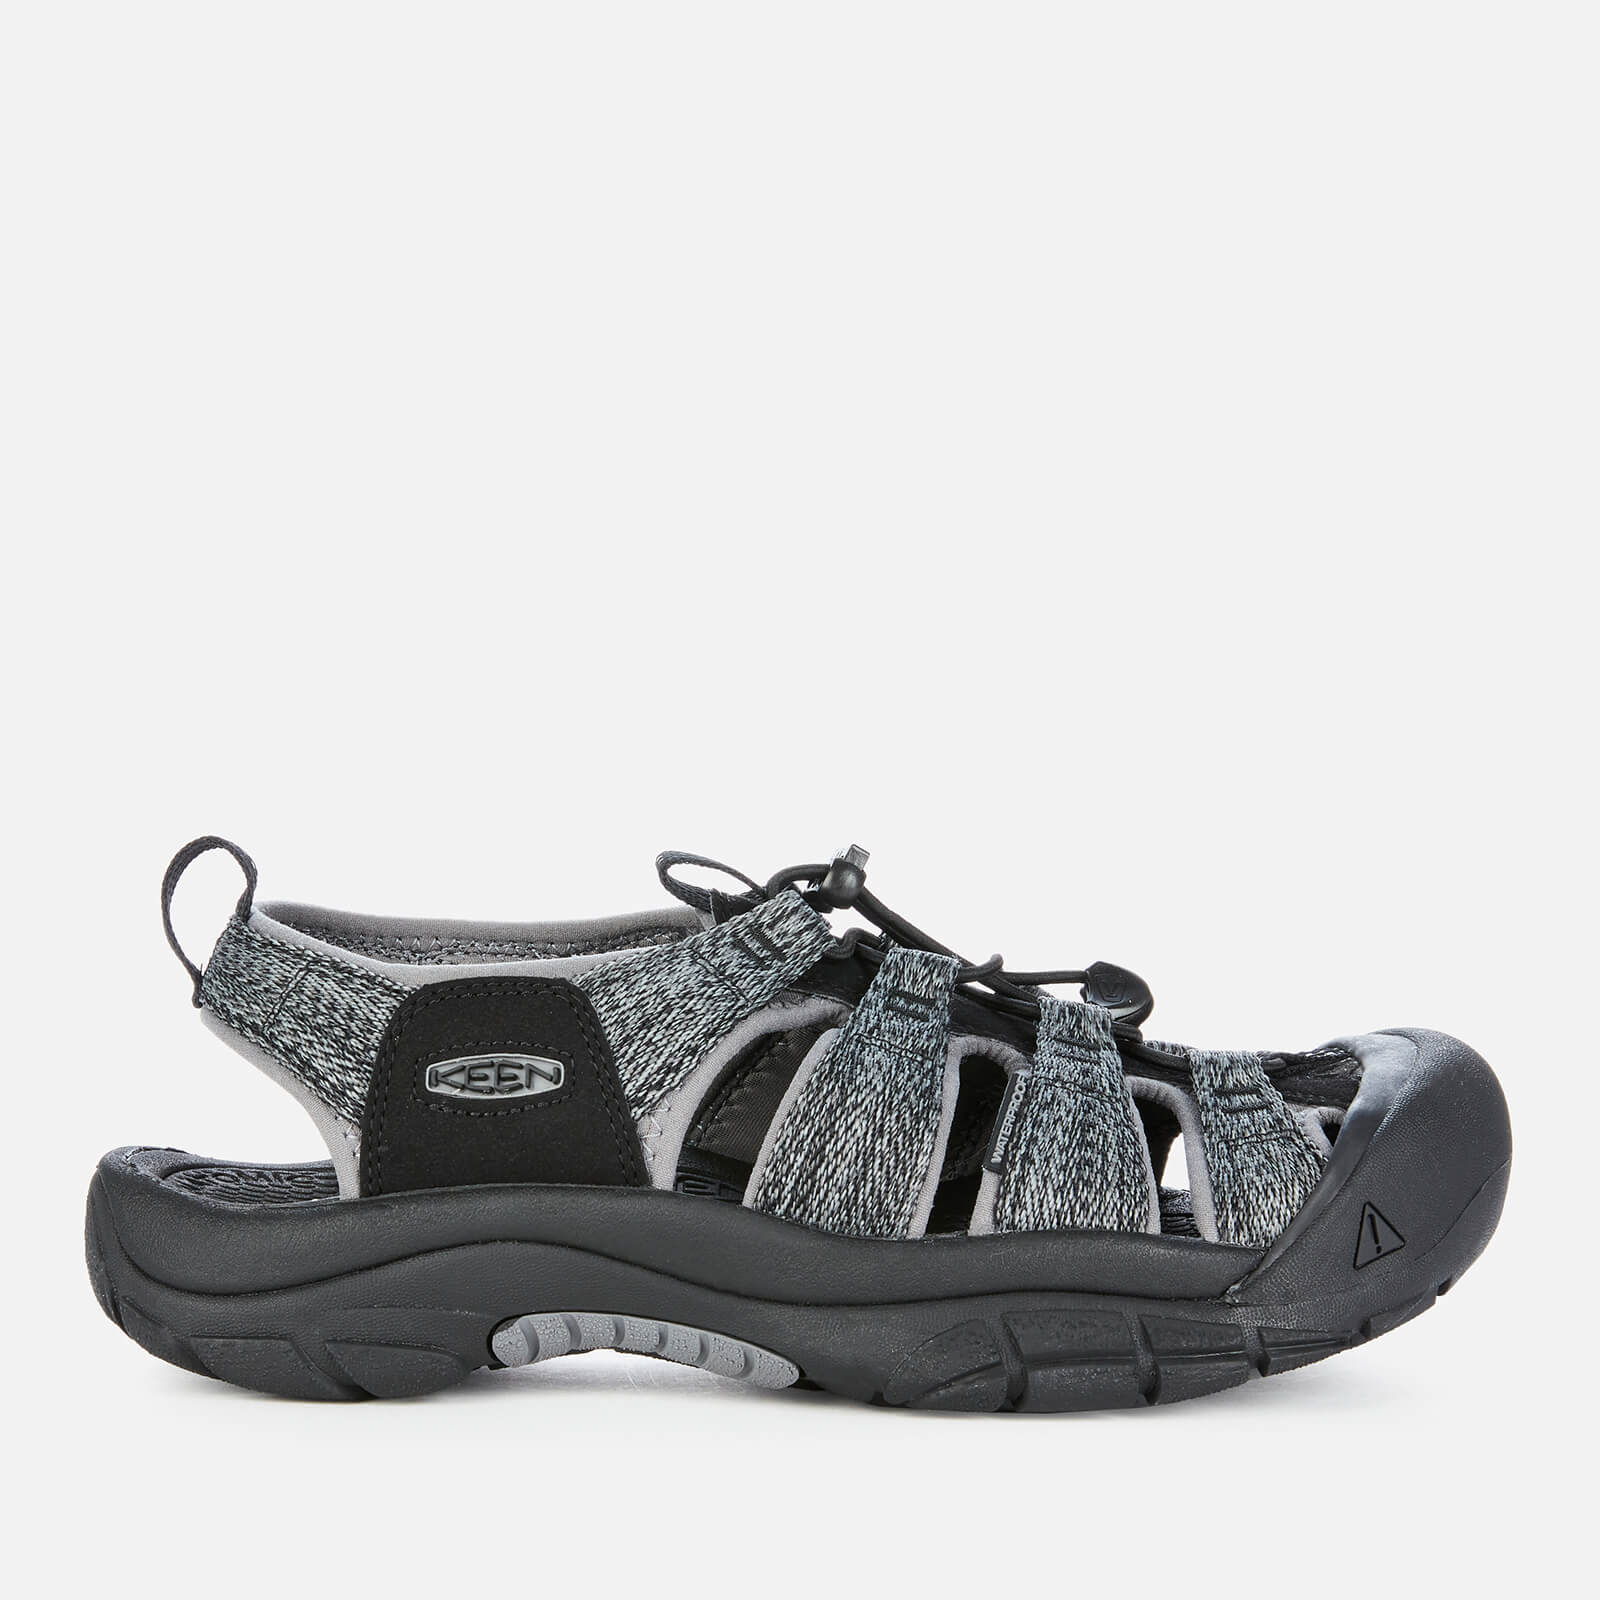 Keen Men's Newport H2 Sandals - Black/Steel Grey - UK 10